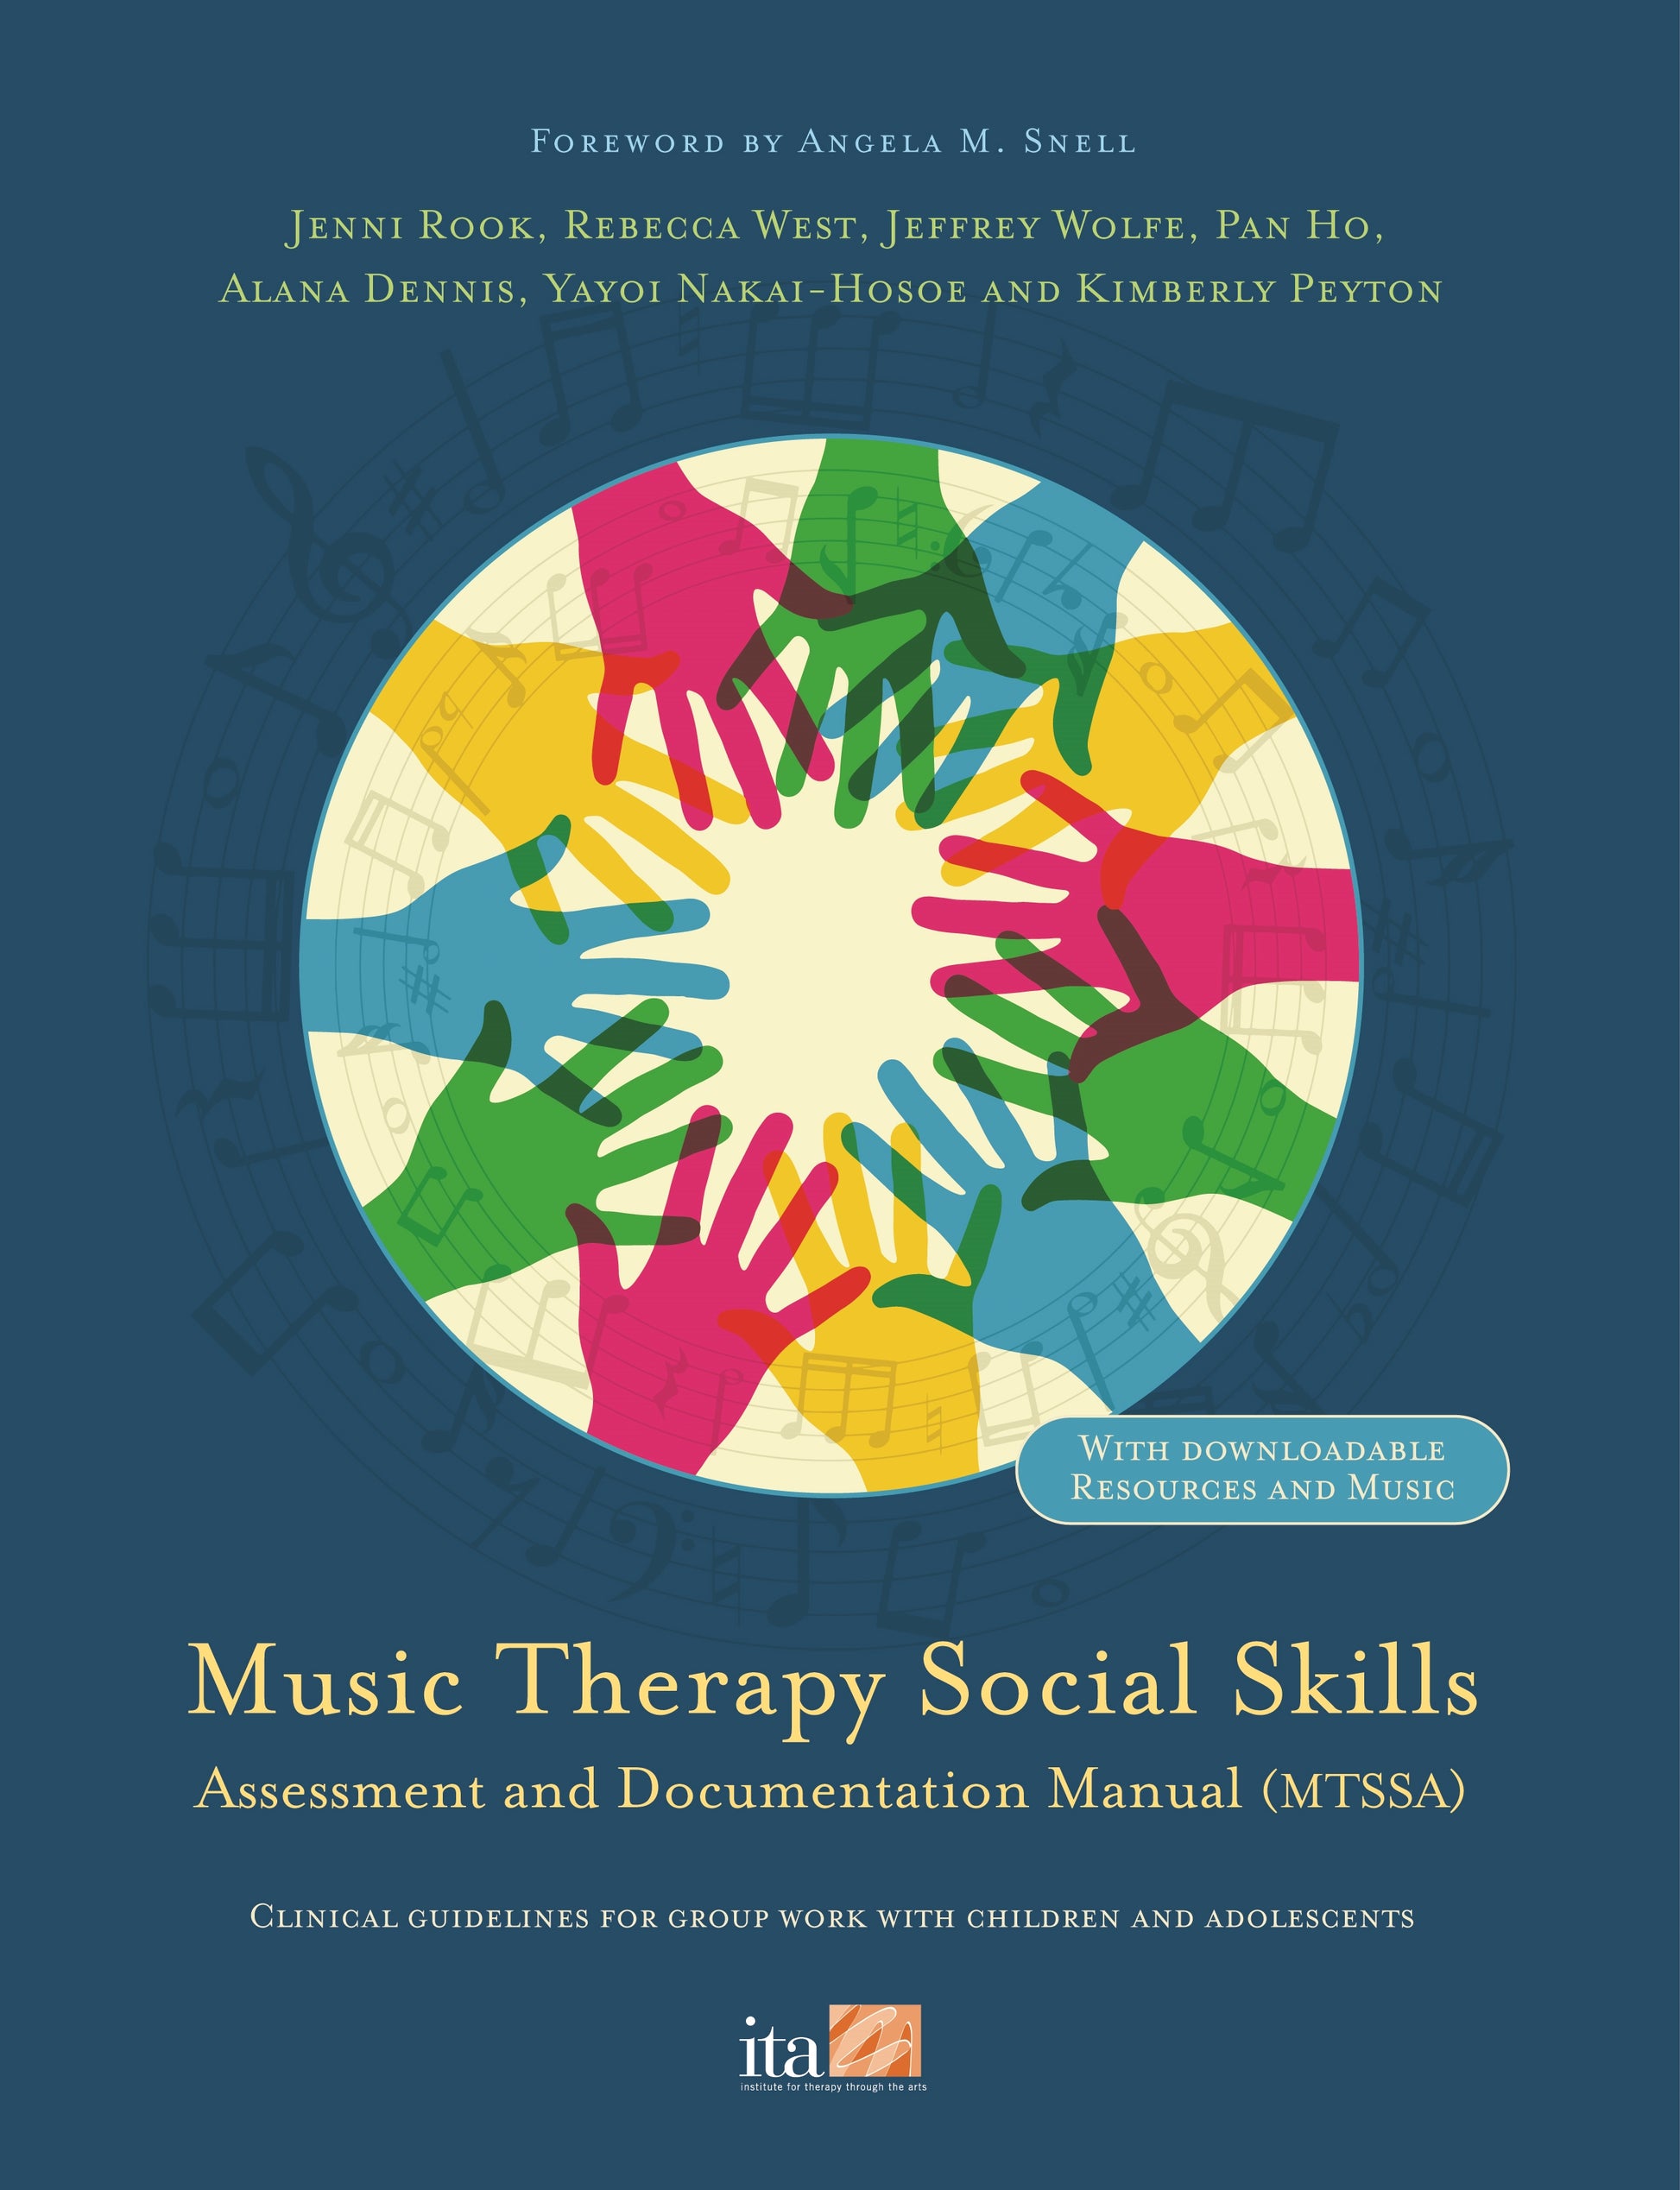 Music Therapy Social Skills Assessment and Documentation Manual (MTSSA) by Alana Dennis, Pan Ho, Rebecca West, Kimberly Peyton, Yayoi Nakai-Hosoe, Jenni Rook, Jeffrey Wolfe